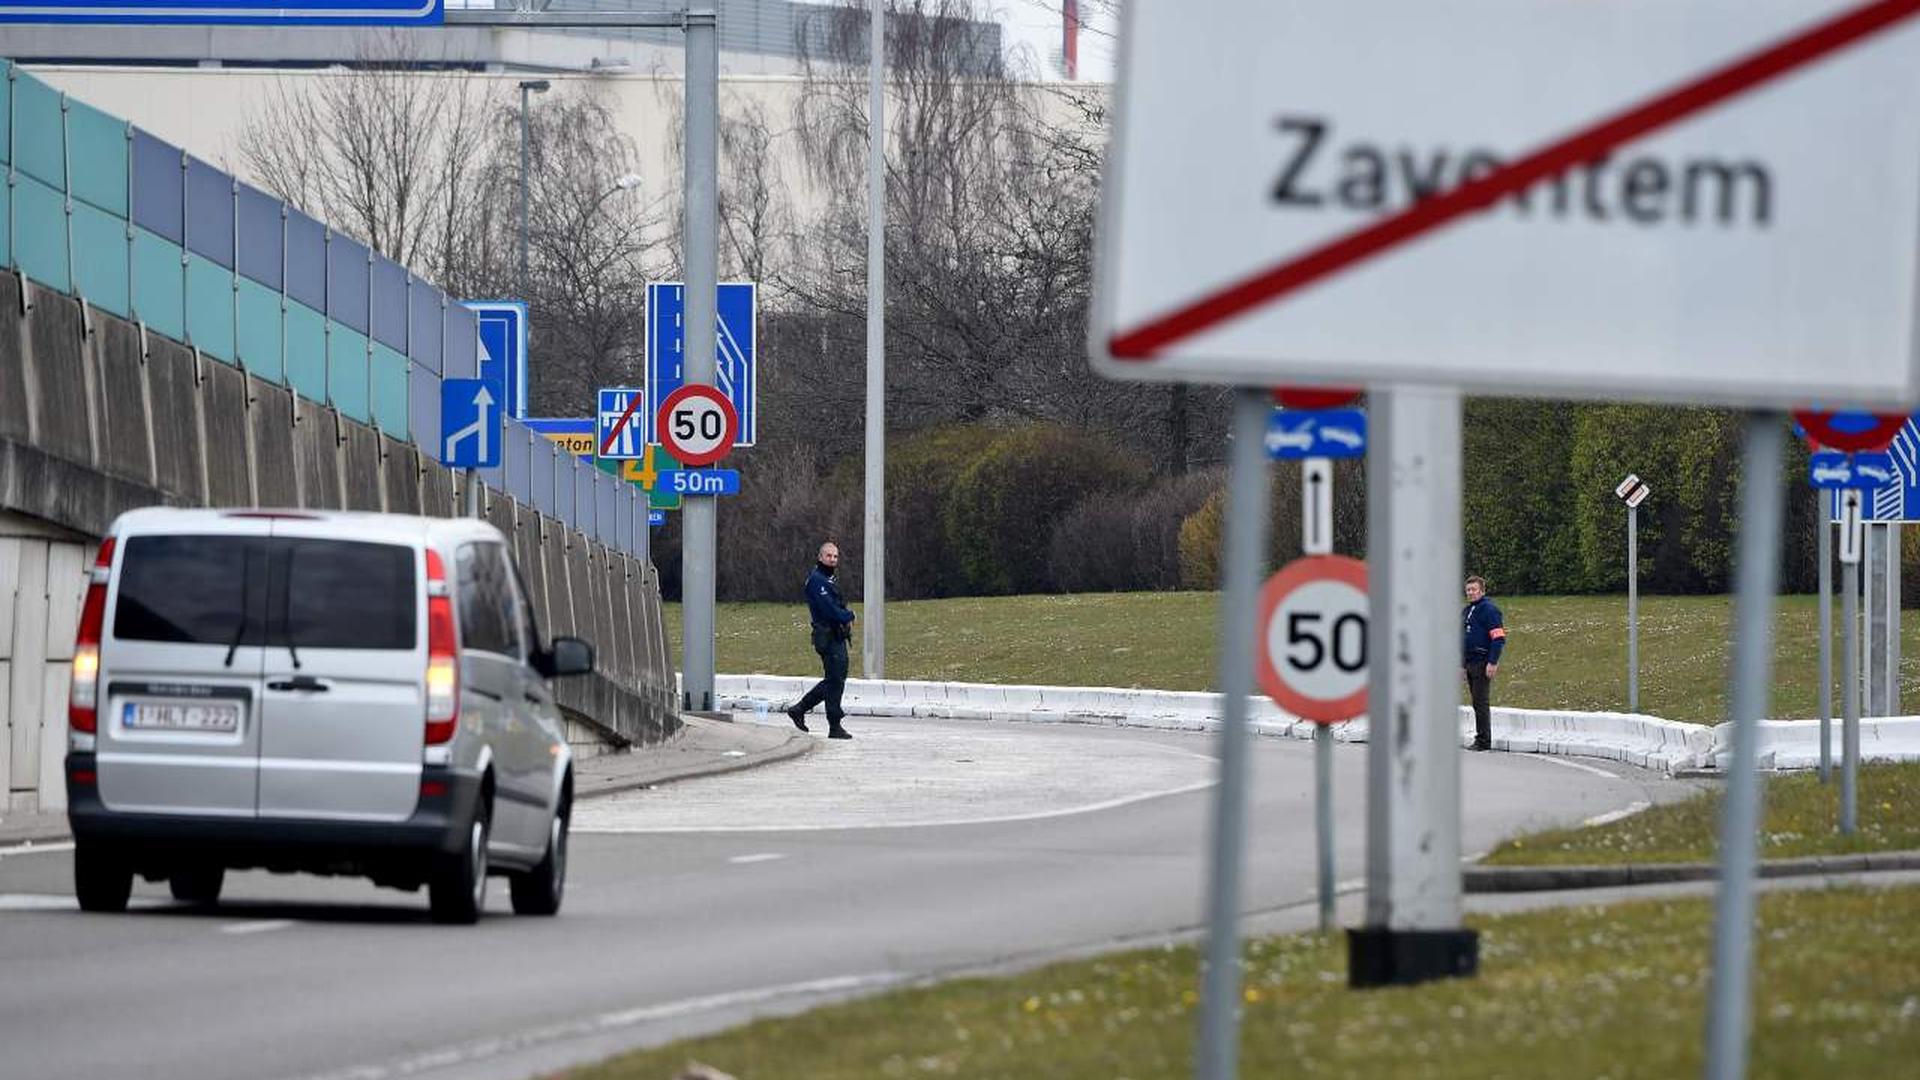 Au moins 14 personnes sont mortes et 106 blessées dans deux explosions survenues vers 8h à l’aéroport de Zaventem, selon le parquet fédéral. Le trafic aérien est interrompu.